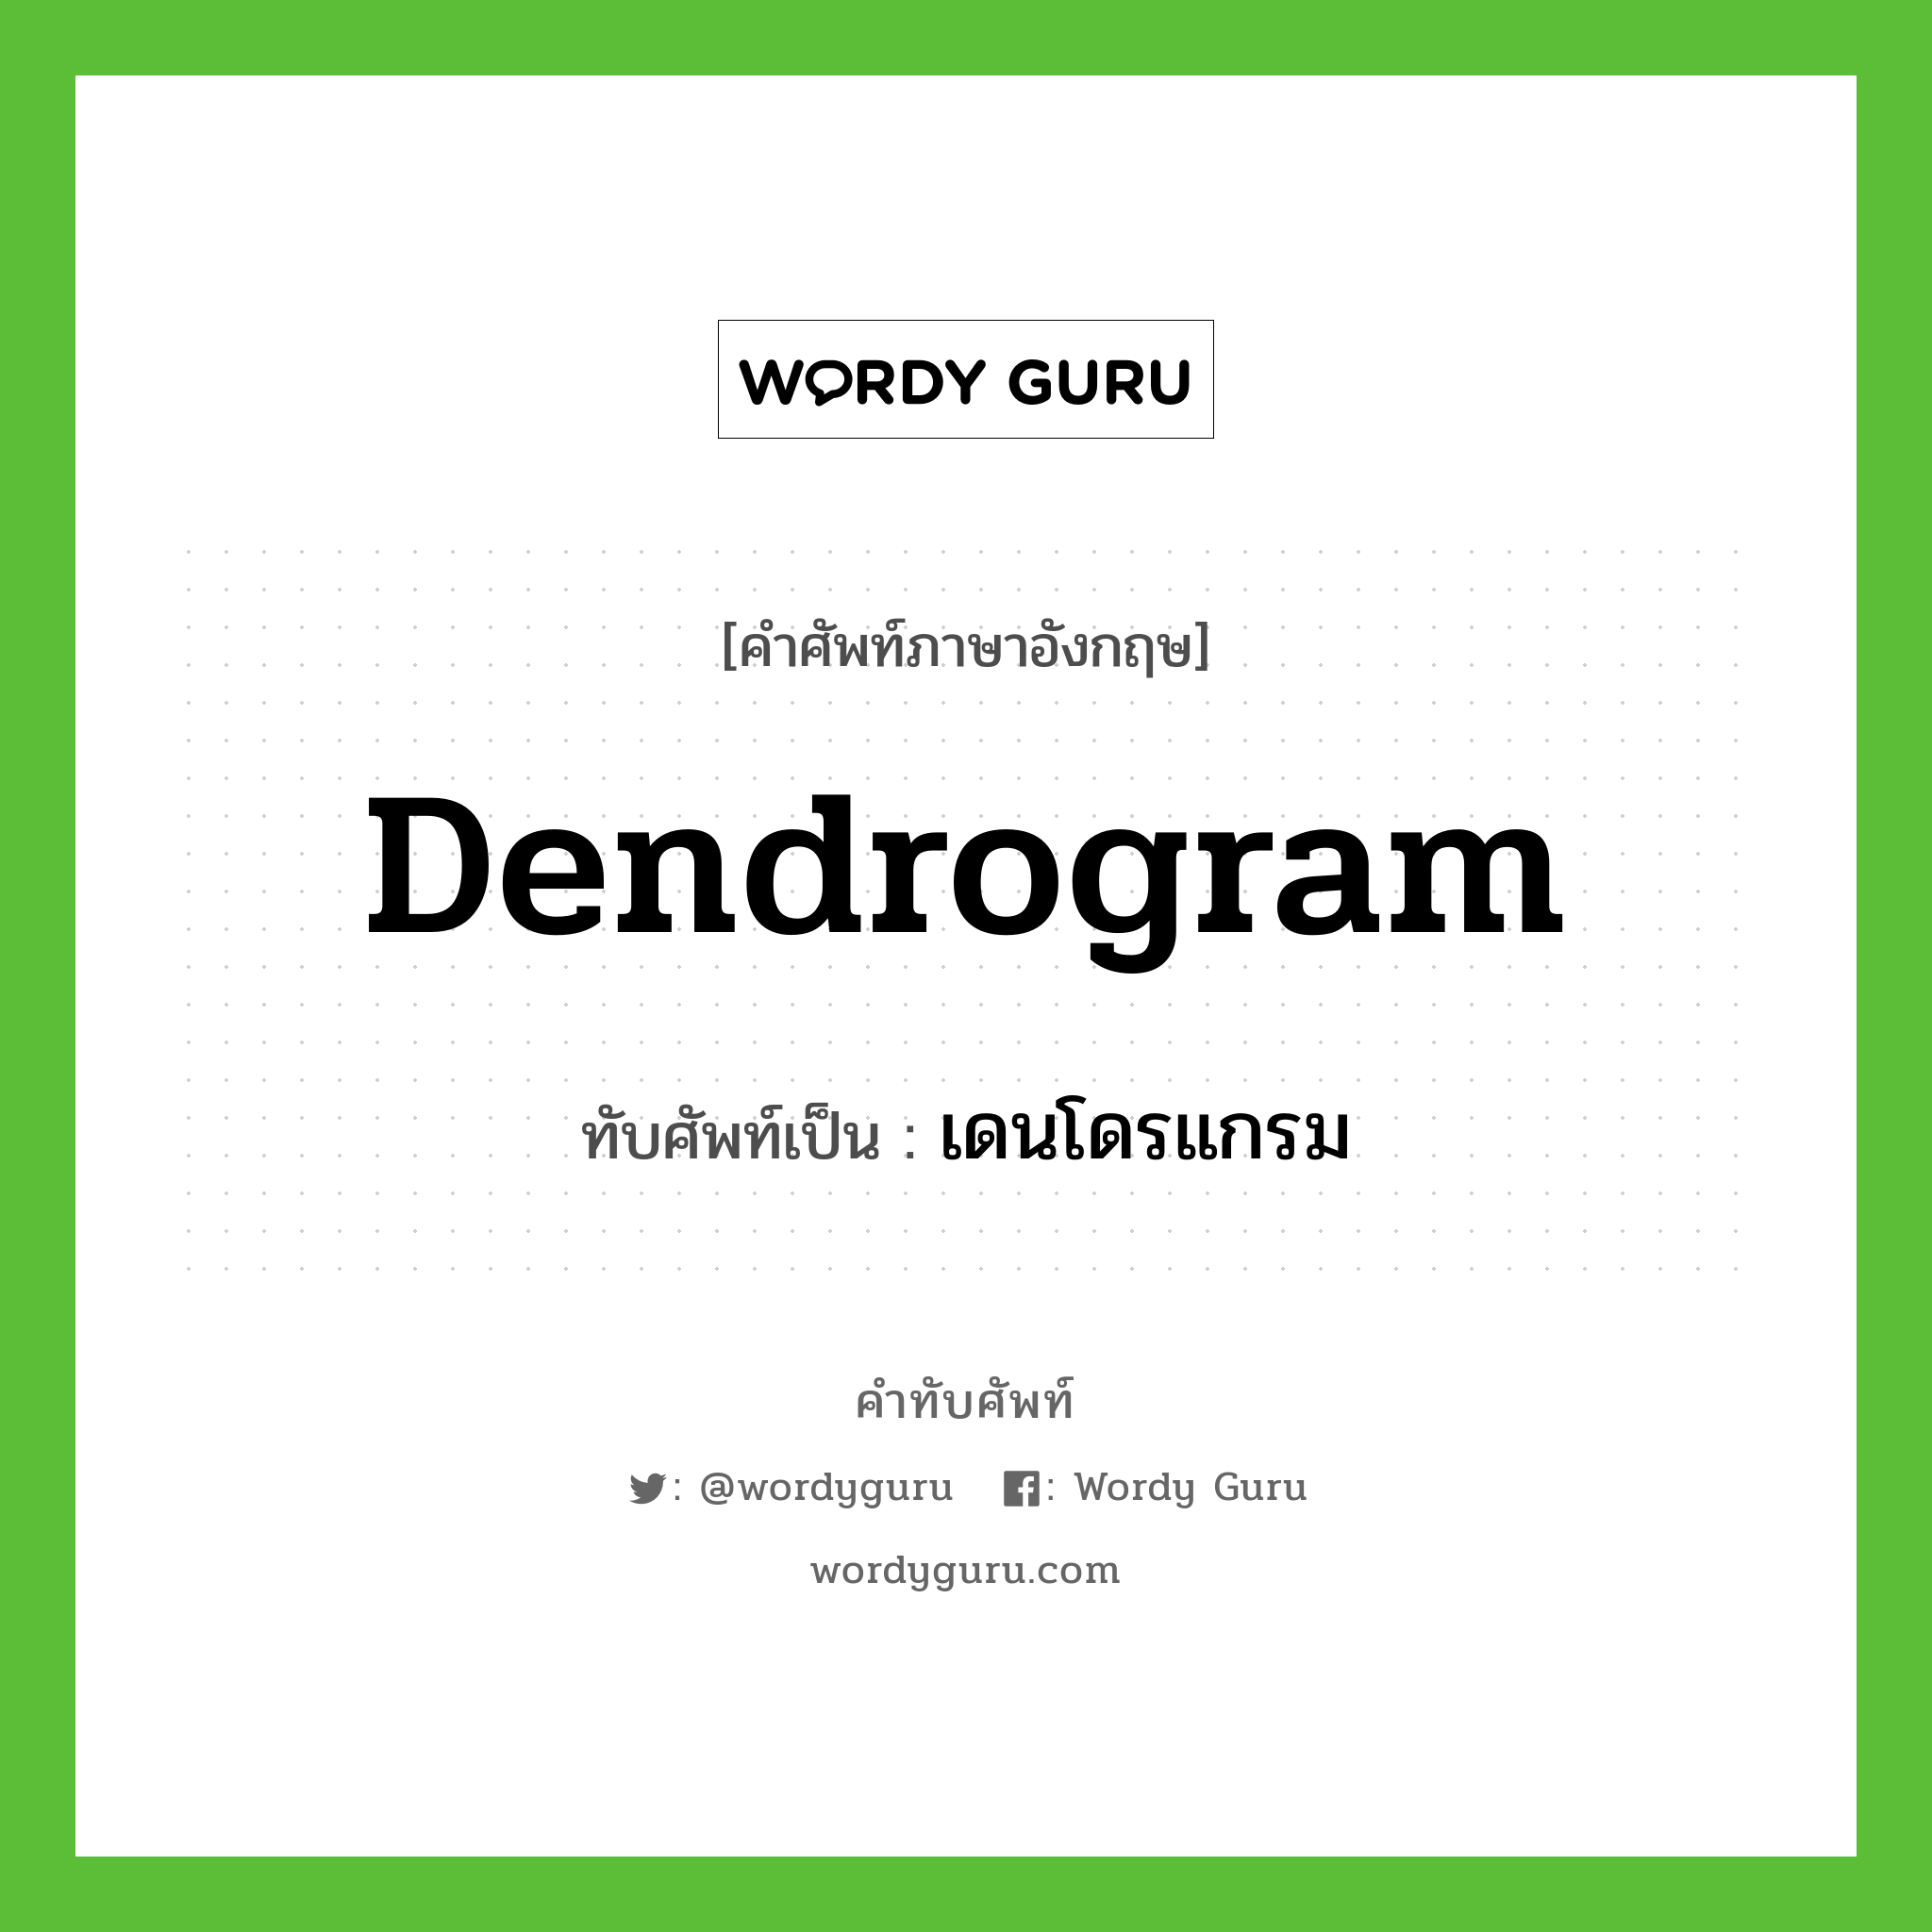 dendrogram เขียนเป็นคำไทยว่าอะไร?, คำศัพท์ภาษาอังกฤษ dendrogram ทับศัพท์เป็น เดนโดรแกรม